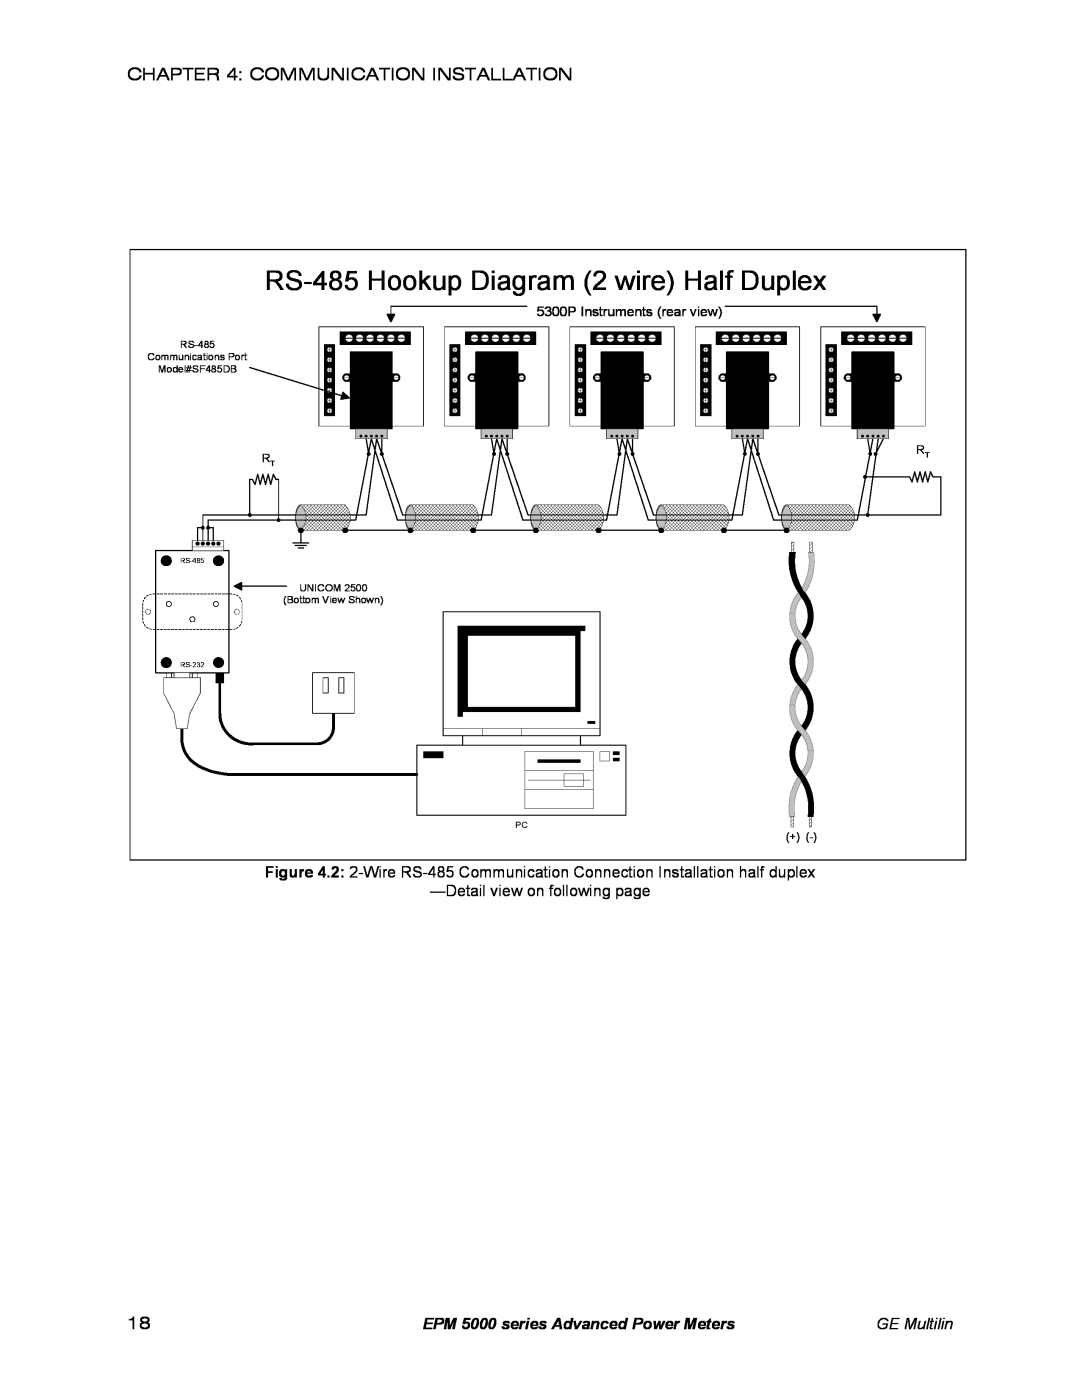 GE EPM 5300 RS-485 Hookup Diagram 2 wire Half Duplex, EPM 5000 series Advanced Power Meters, GE Multilin, Model#SF485DB 